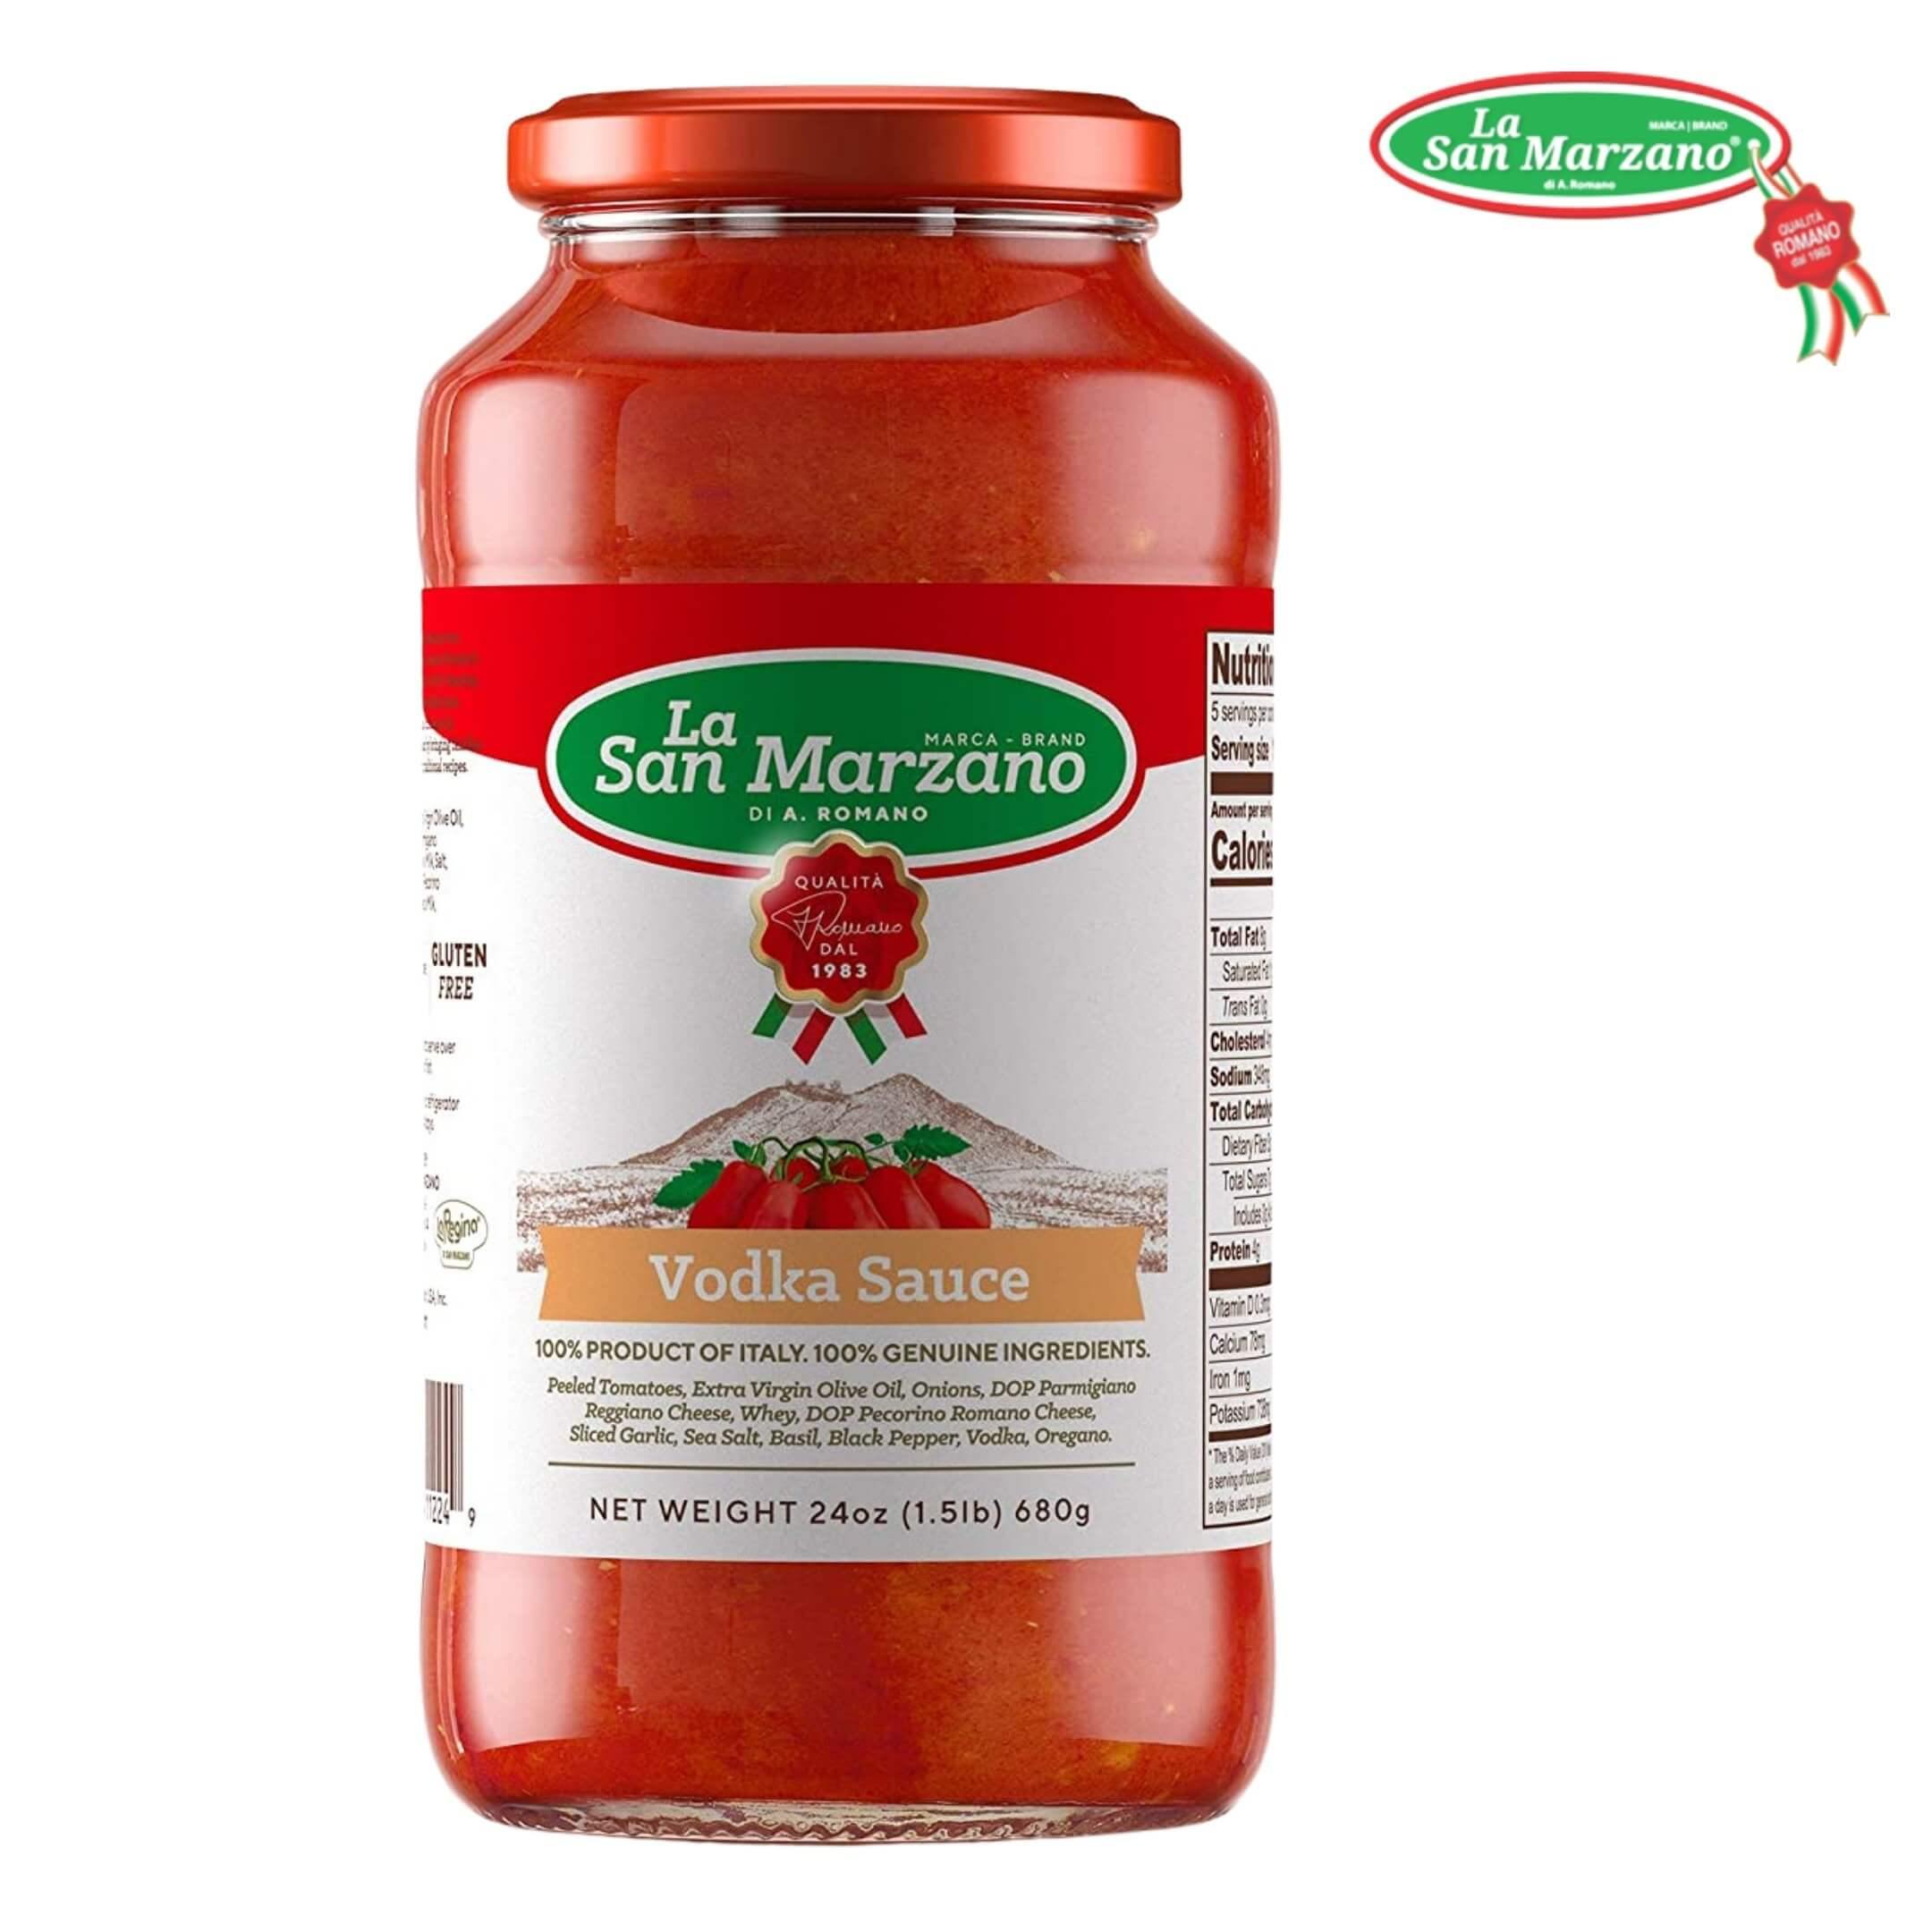 La San Marzano Vodka Tomato Sauce 24 oz. - Wholesale Italian Food